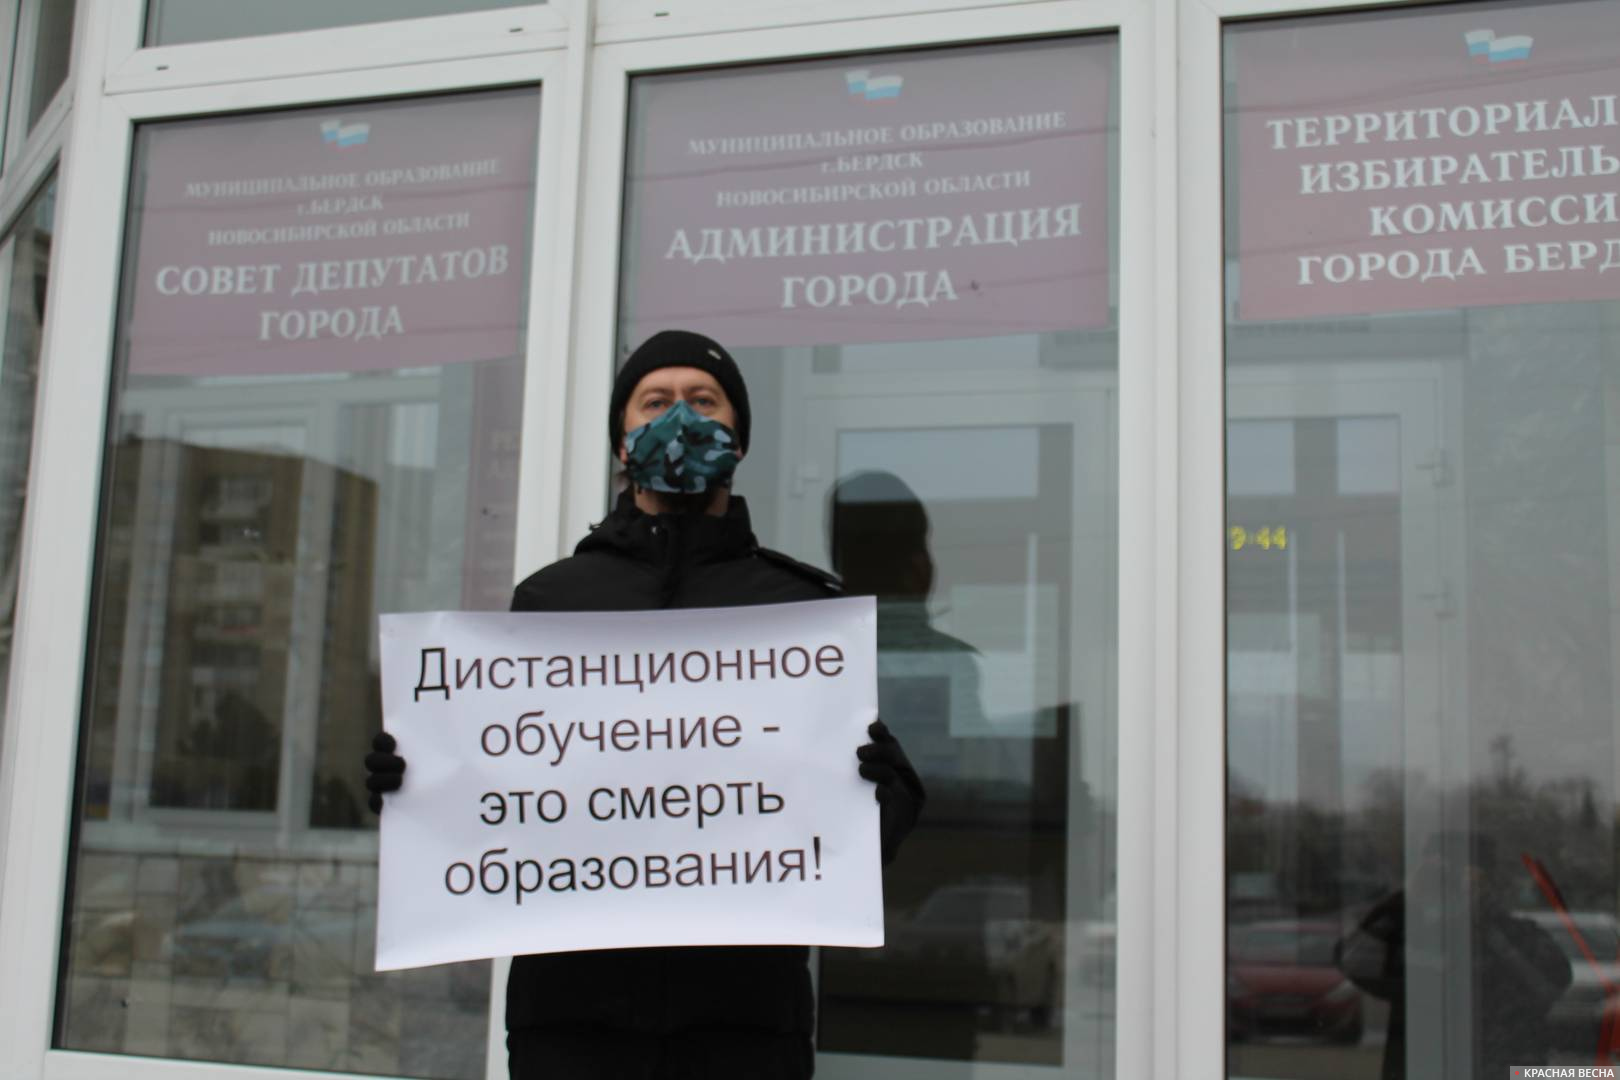 Одиночный пикет против достанционного обучения г. Бердск